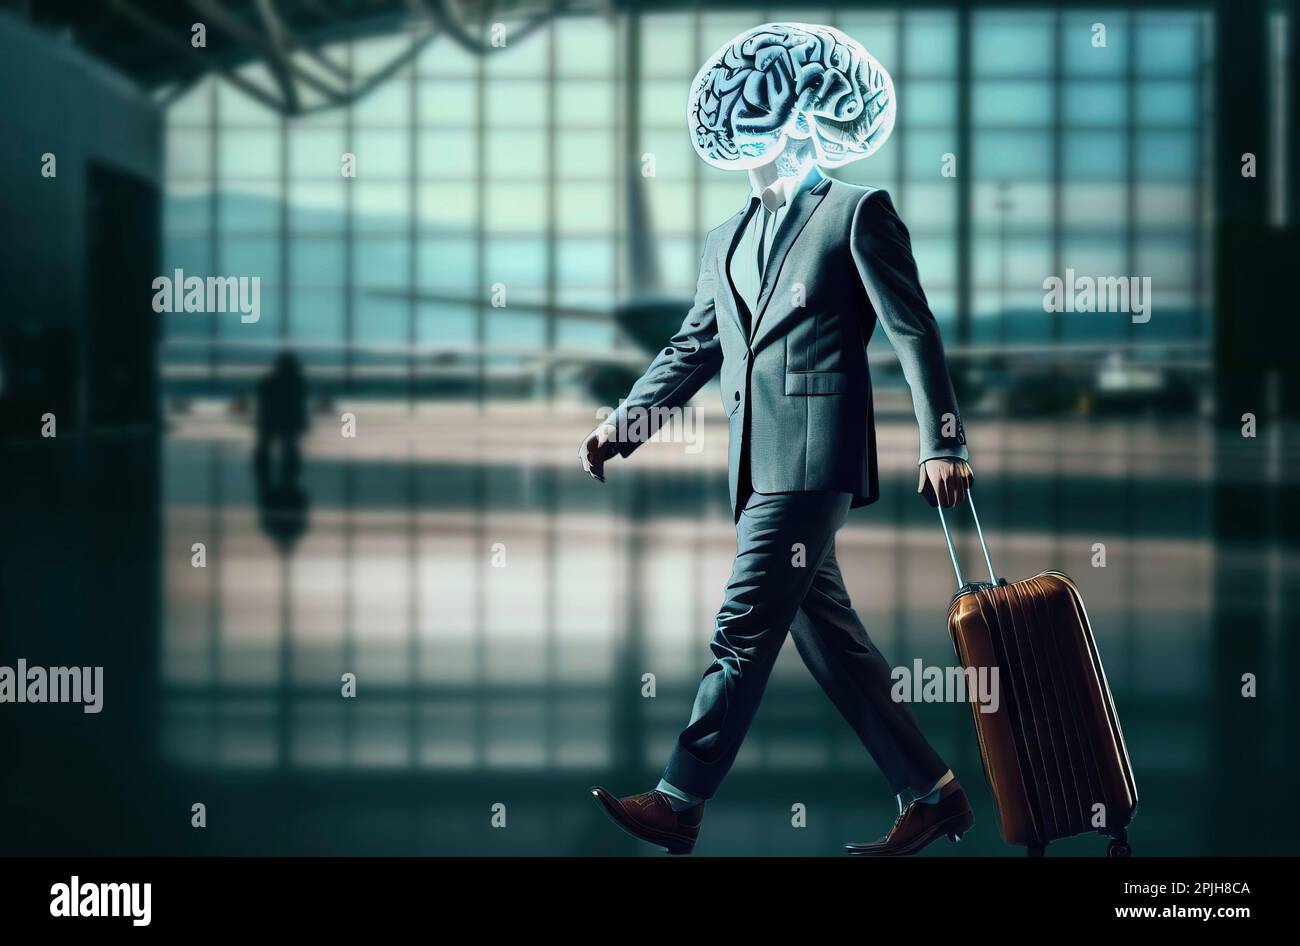 Metapher des Brain Drain. Ein elegantes Gehirn im Warteraum eines Flughafens, der abreisen will. Stockfoto